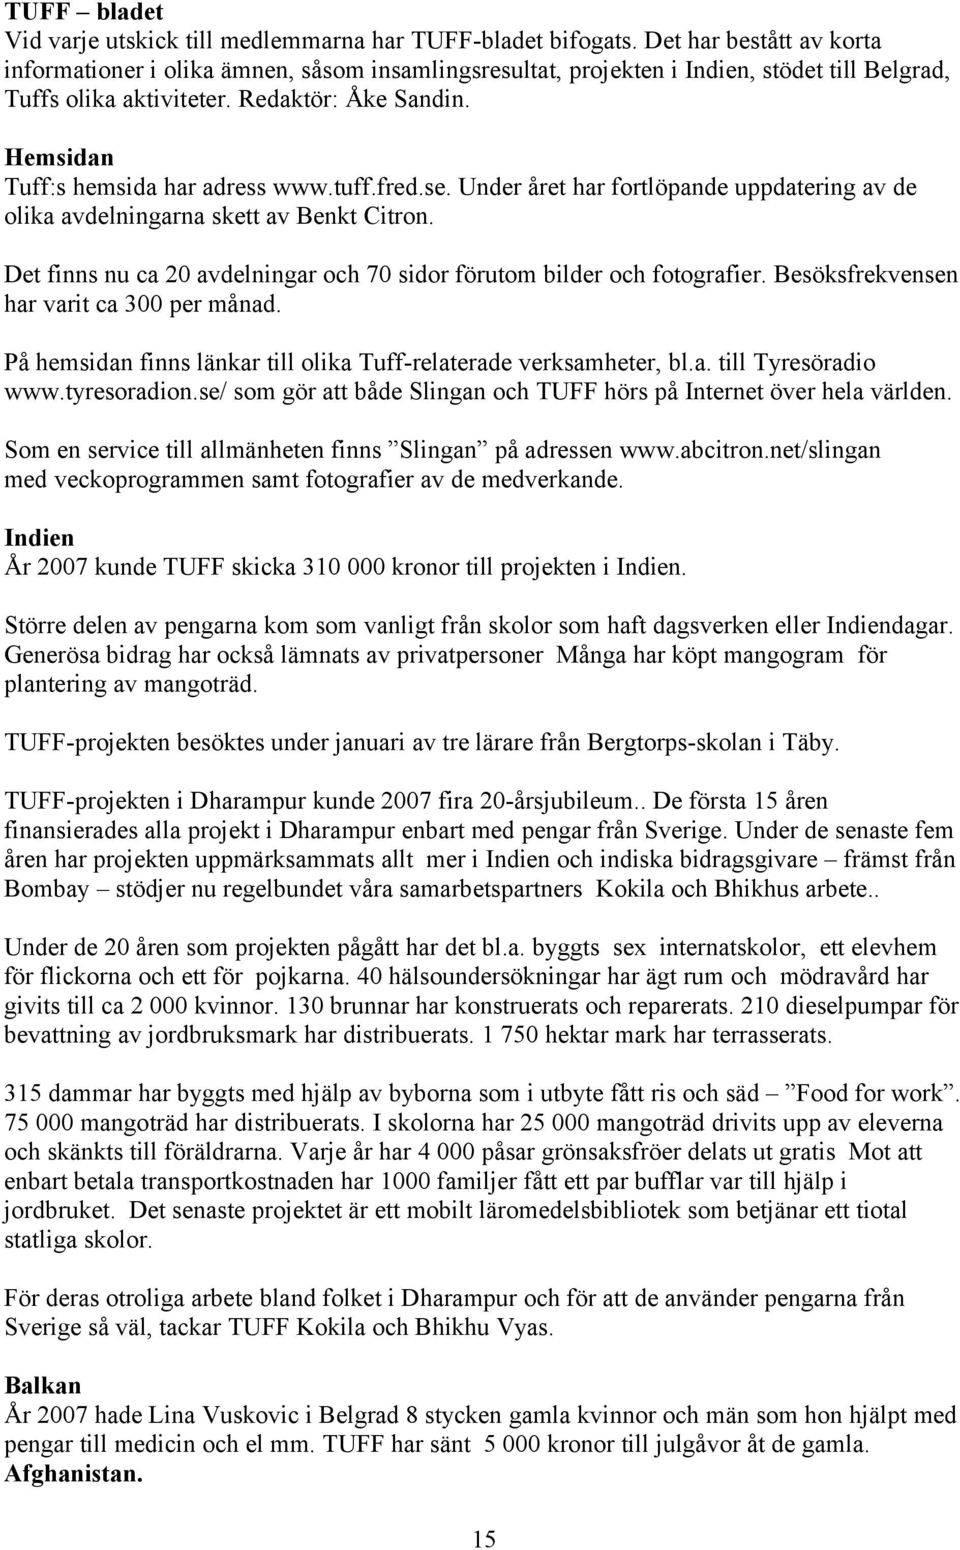 Hemsidan Tuff:s hemsida har adress www.tuff.fred.se. Under året har fortlöpande uppdatering av de olika avdelningarna skett av Benkt Citron.